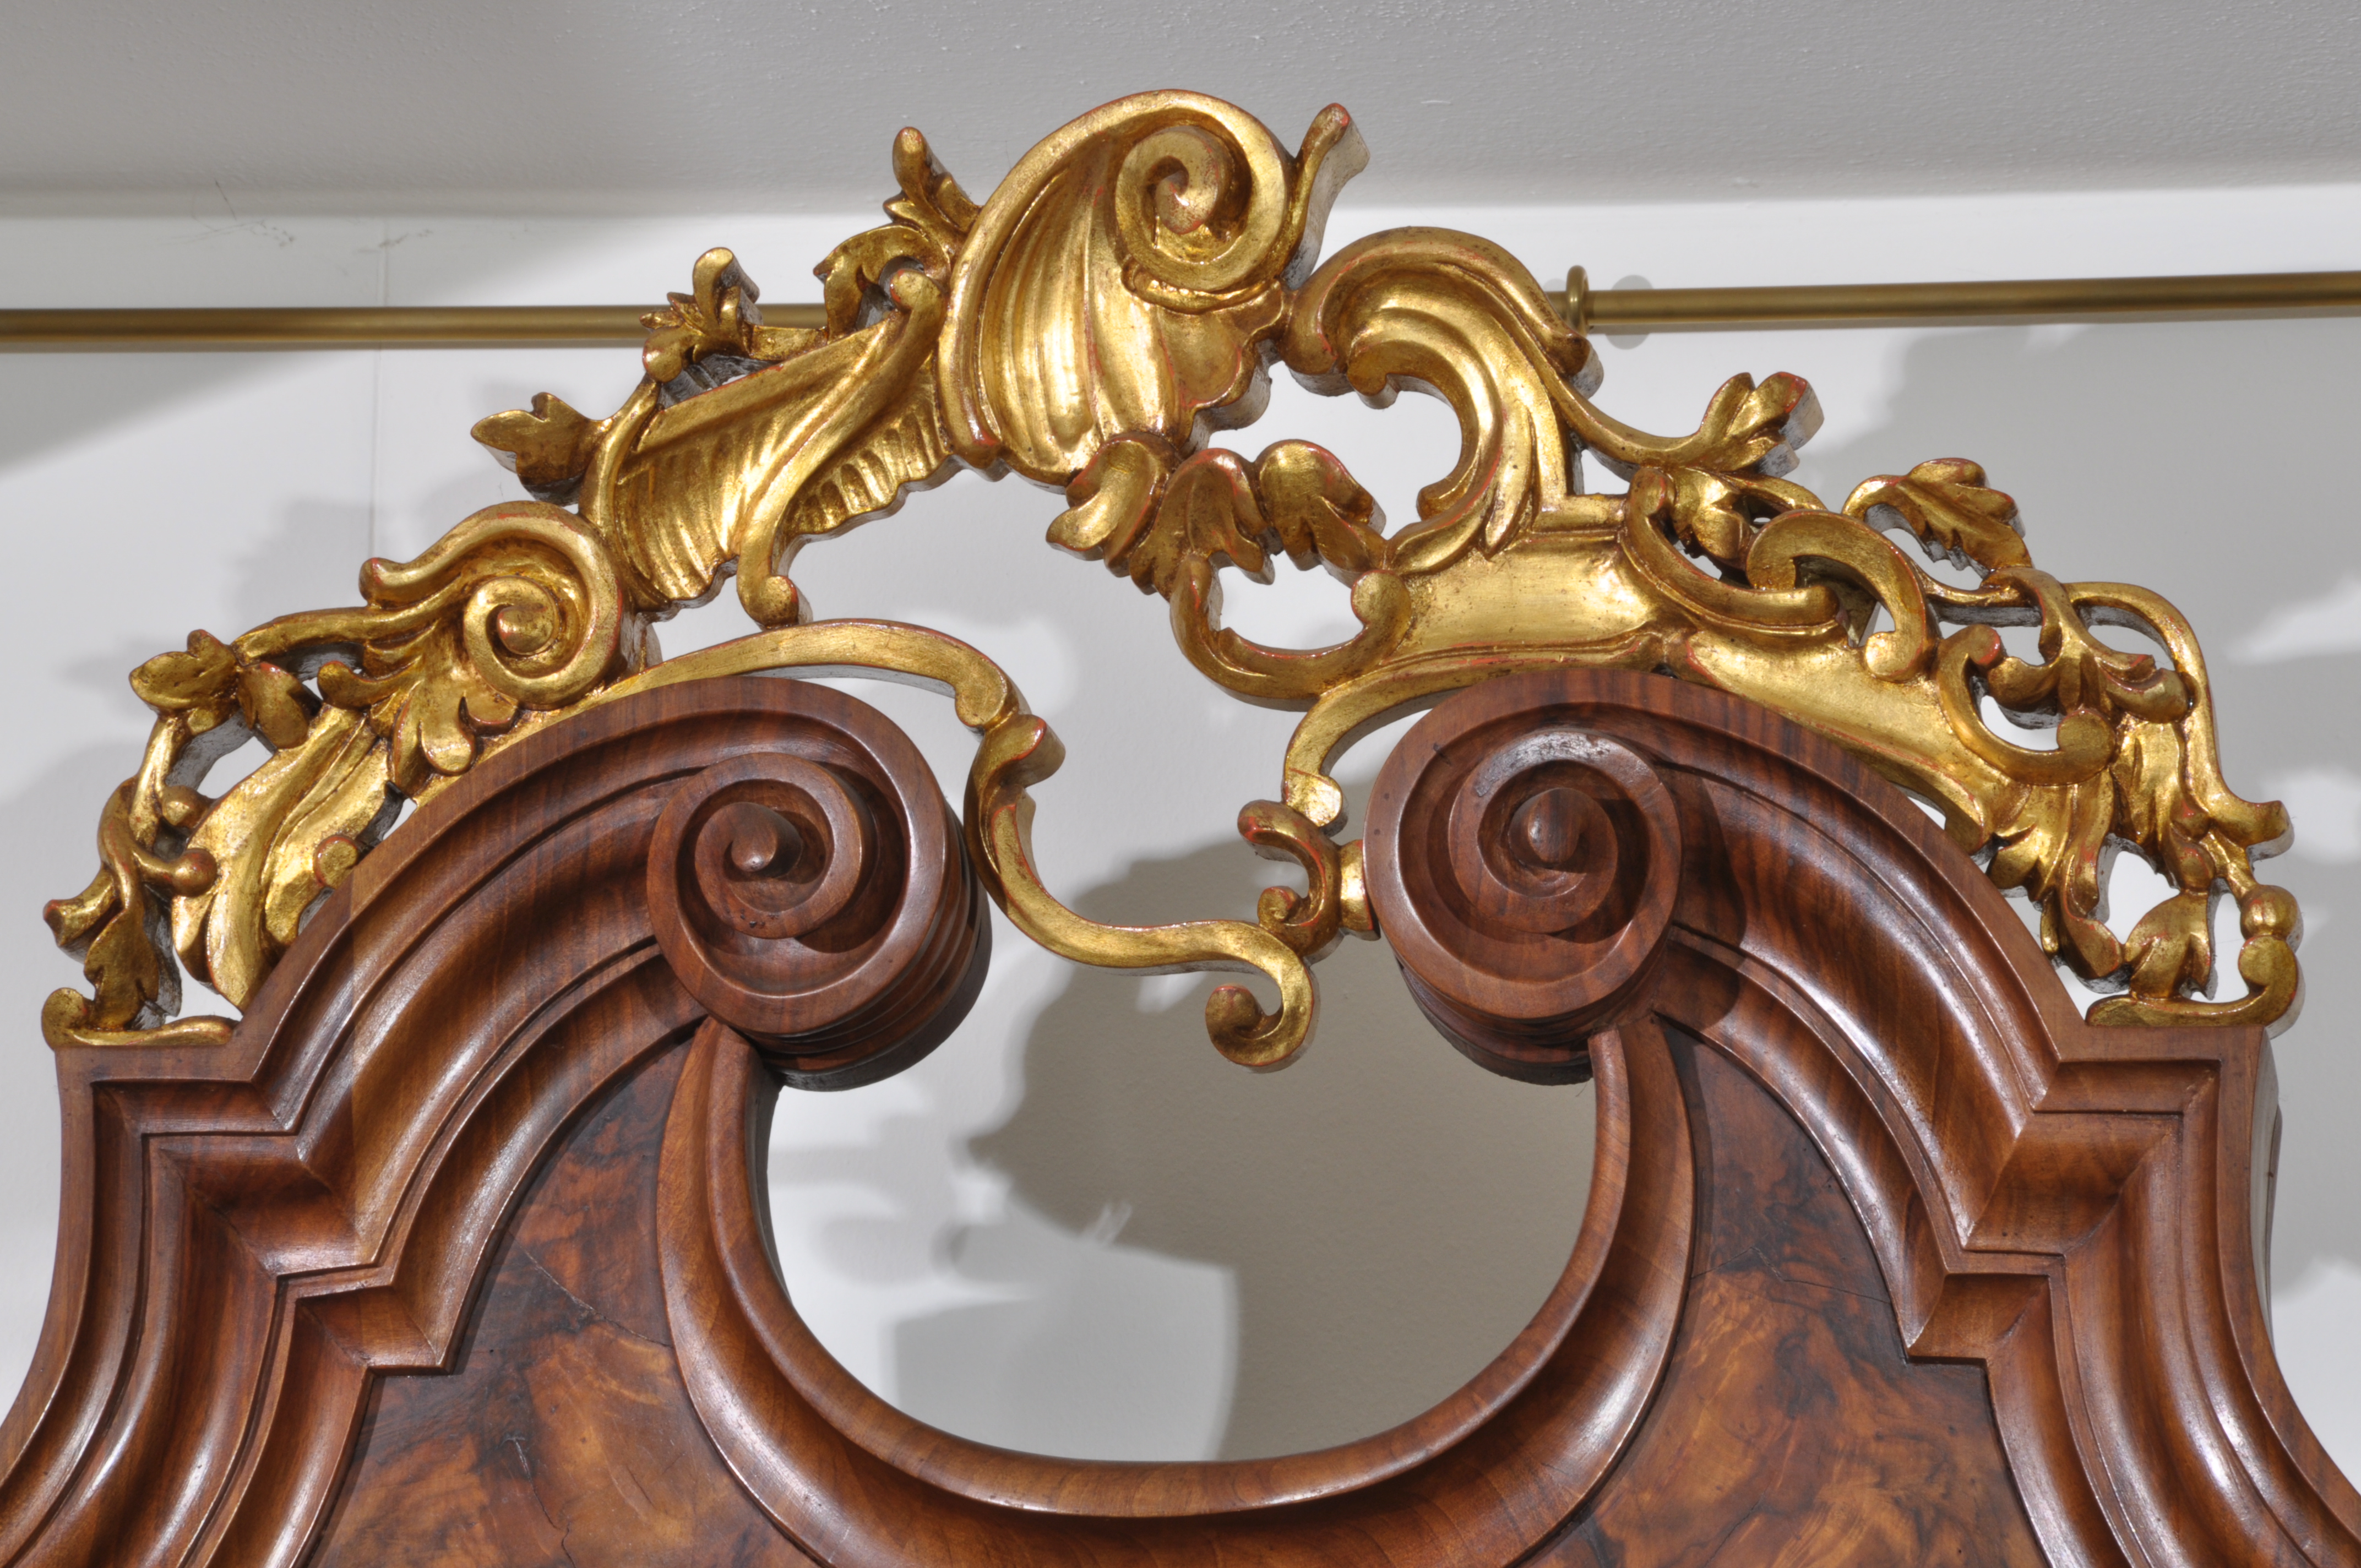 secretaire gigante di lusso intarsiato in radica di noce con intagli in foglia oro e segreti arredo trumeau di lusso in stile settecento barocco veneziano